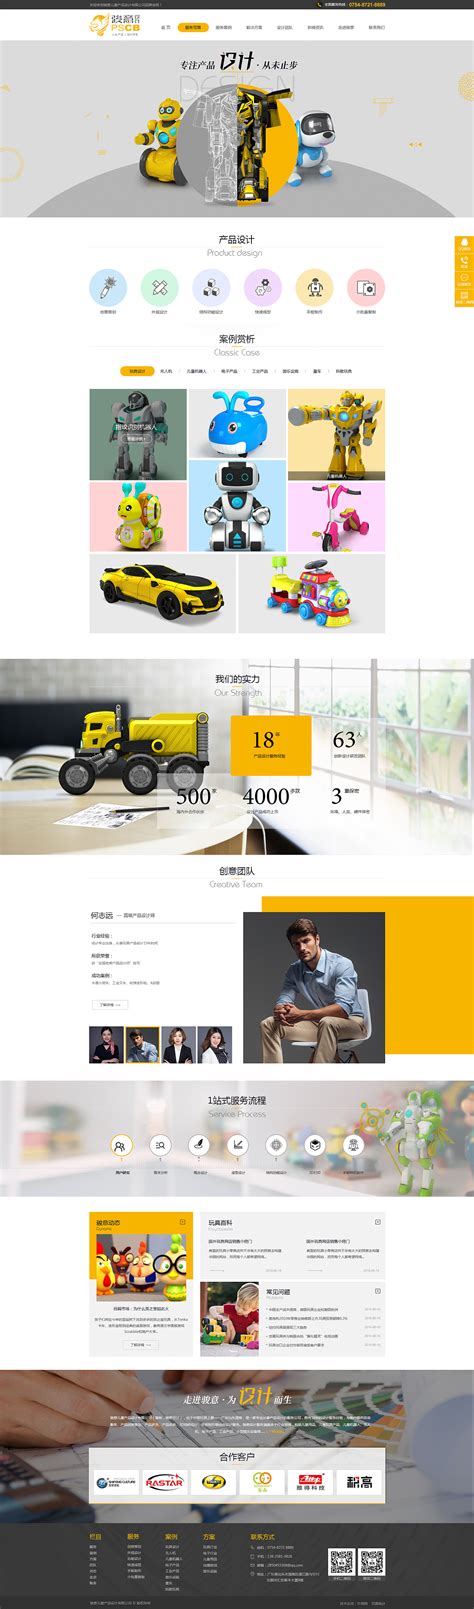 营销型网站品牌官网网站首页工业设计玩具设计外观设计|网页 ...